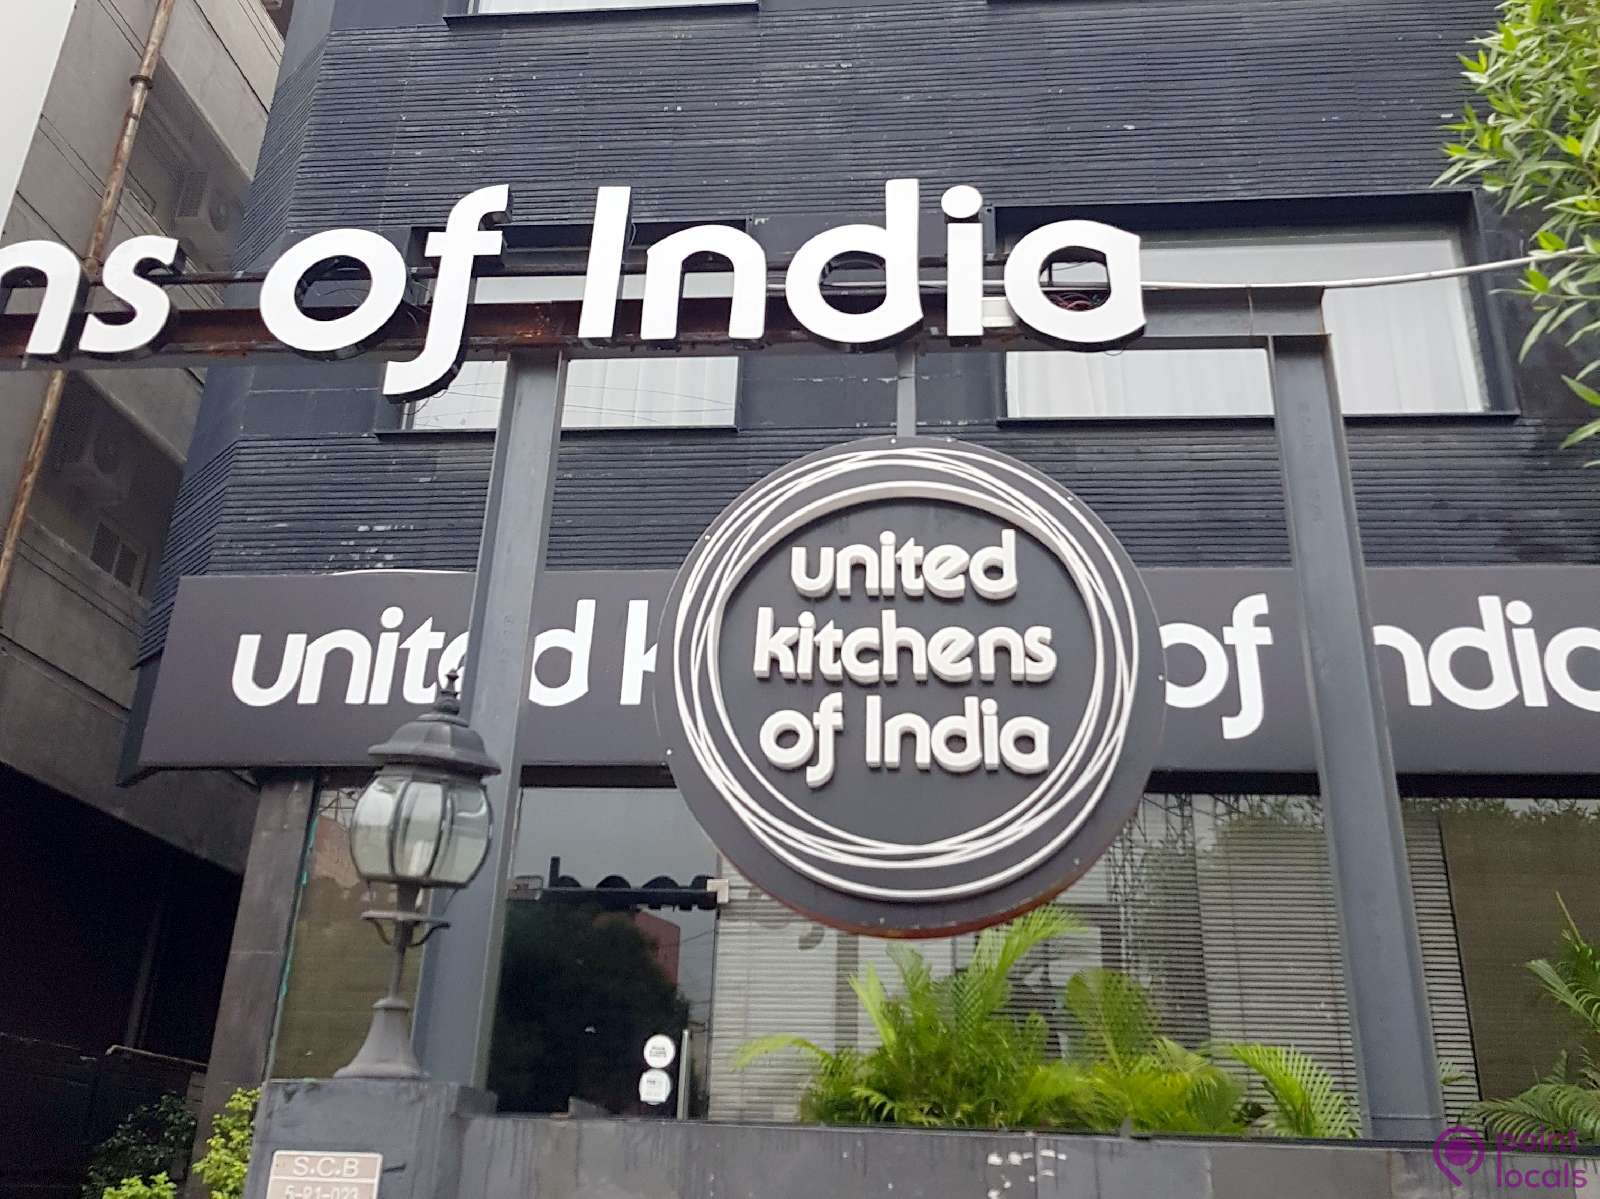 United Kitchens Of India Restaurant In Hyderabad Pointlocals